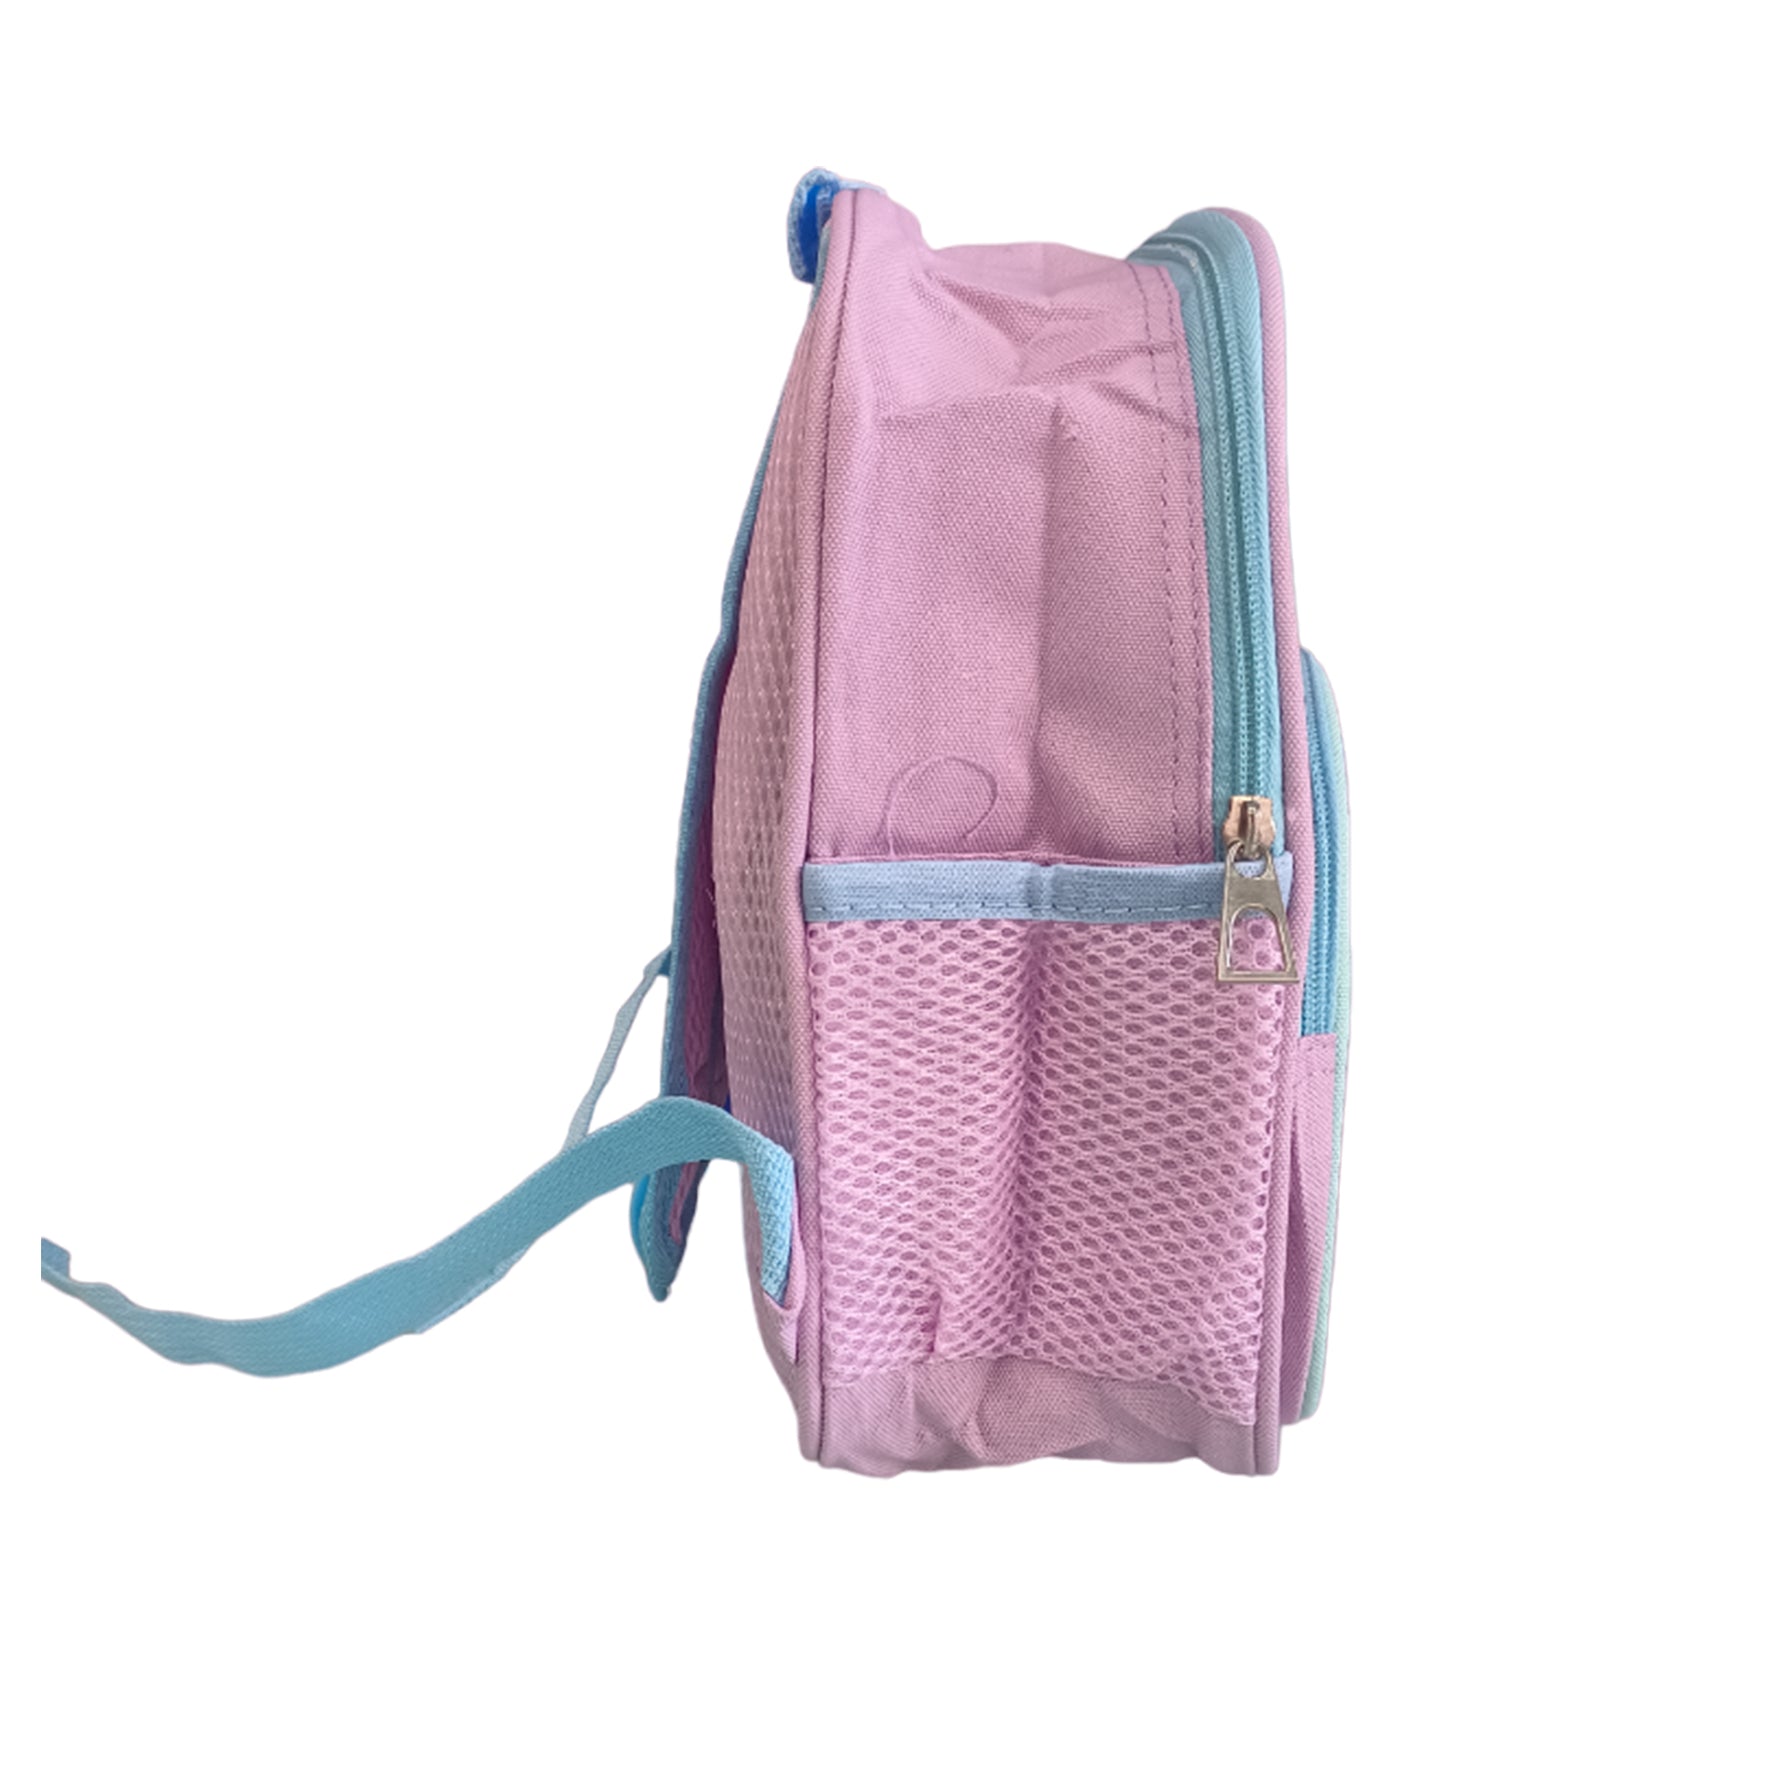 Pre-school Backpack Toddler Neoprene Animal Waterproof Schoolbag Lunch backpack for Kids Boys & Girls